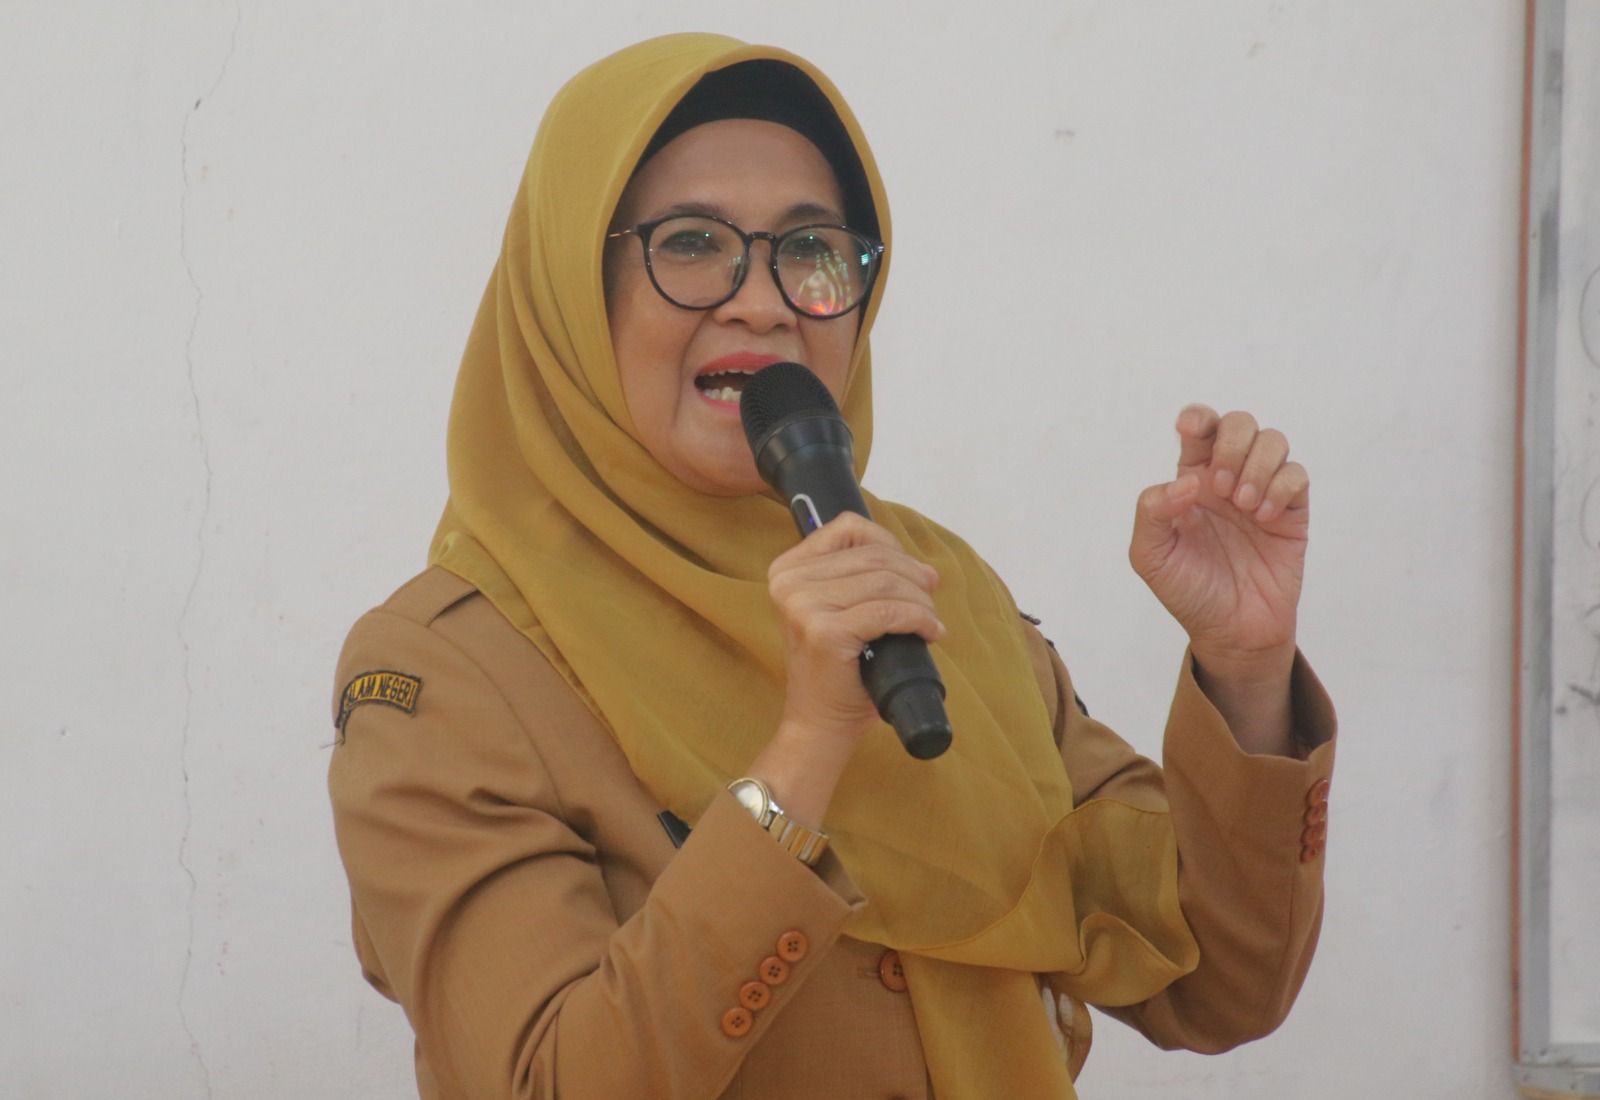 Wali Kota dr Susanti Buka Sosialisasi Etika Dan Budaya Politik Bagi Pemilih Pemula di SMAN 6 Pematang Siantar